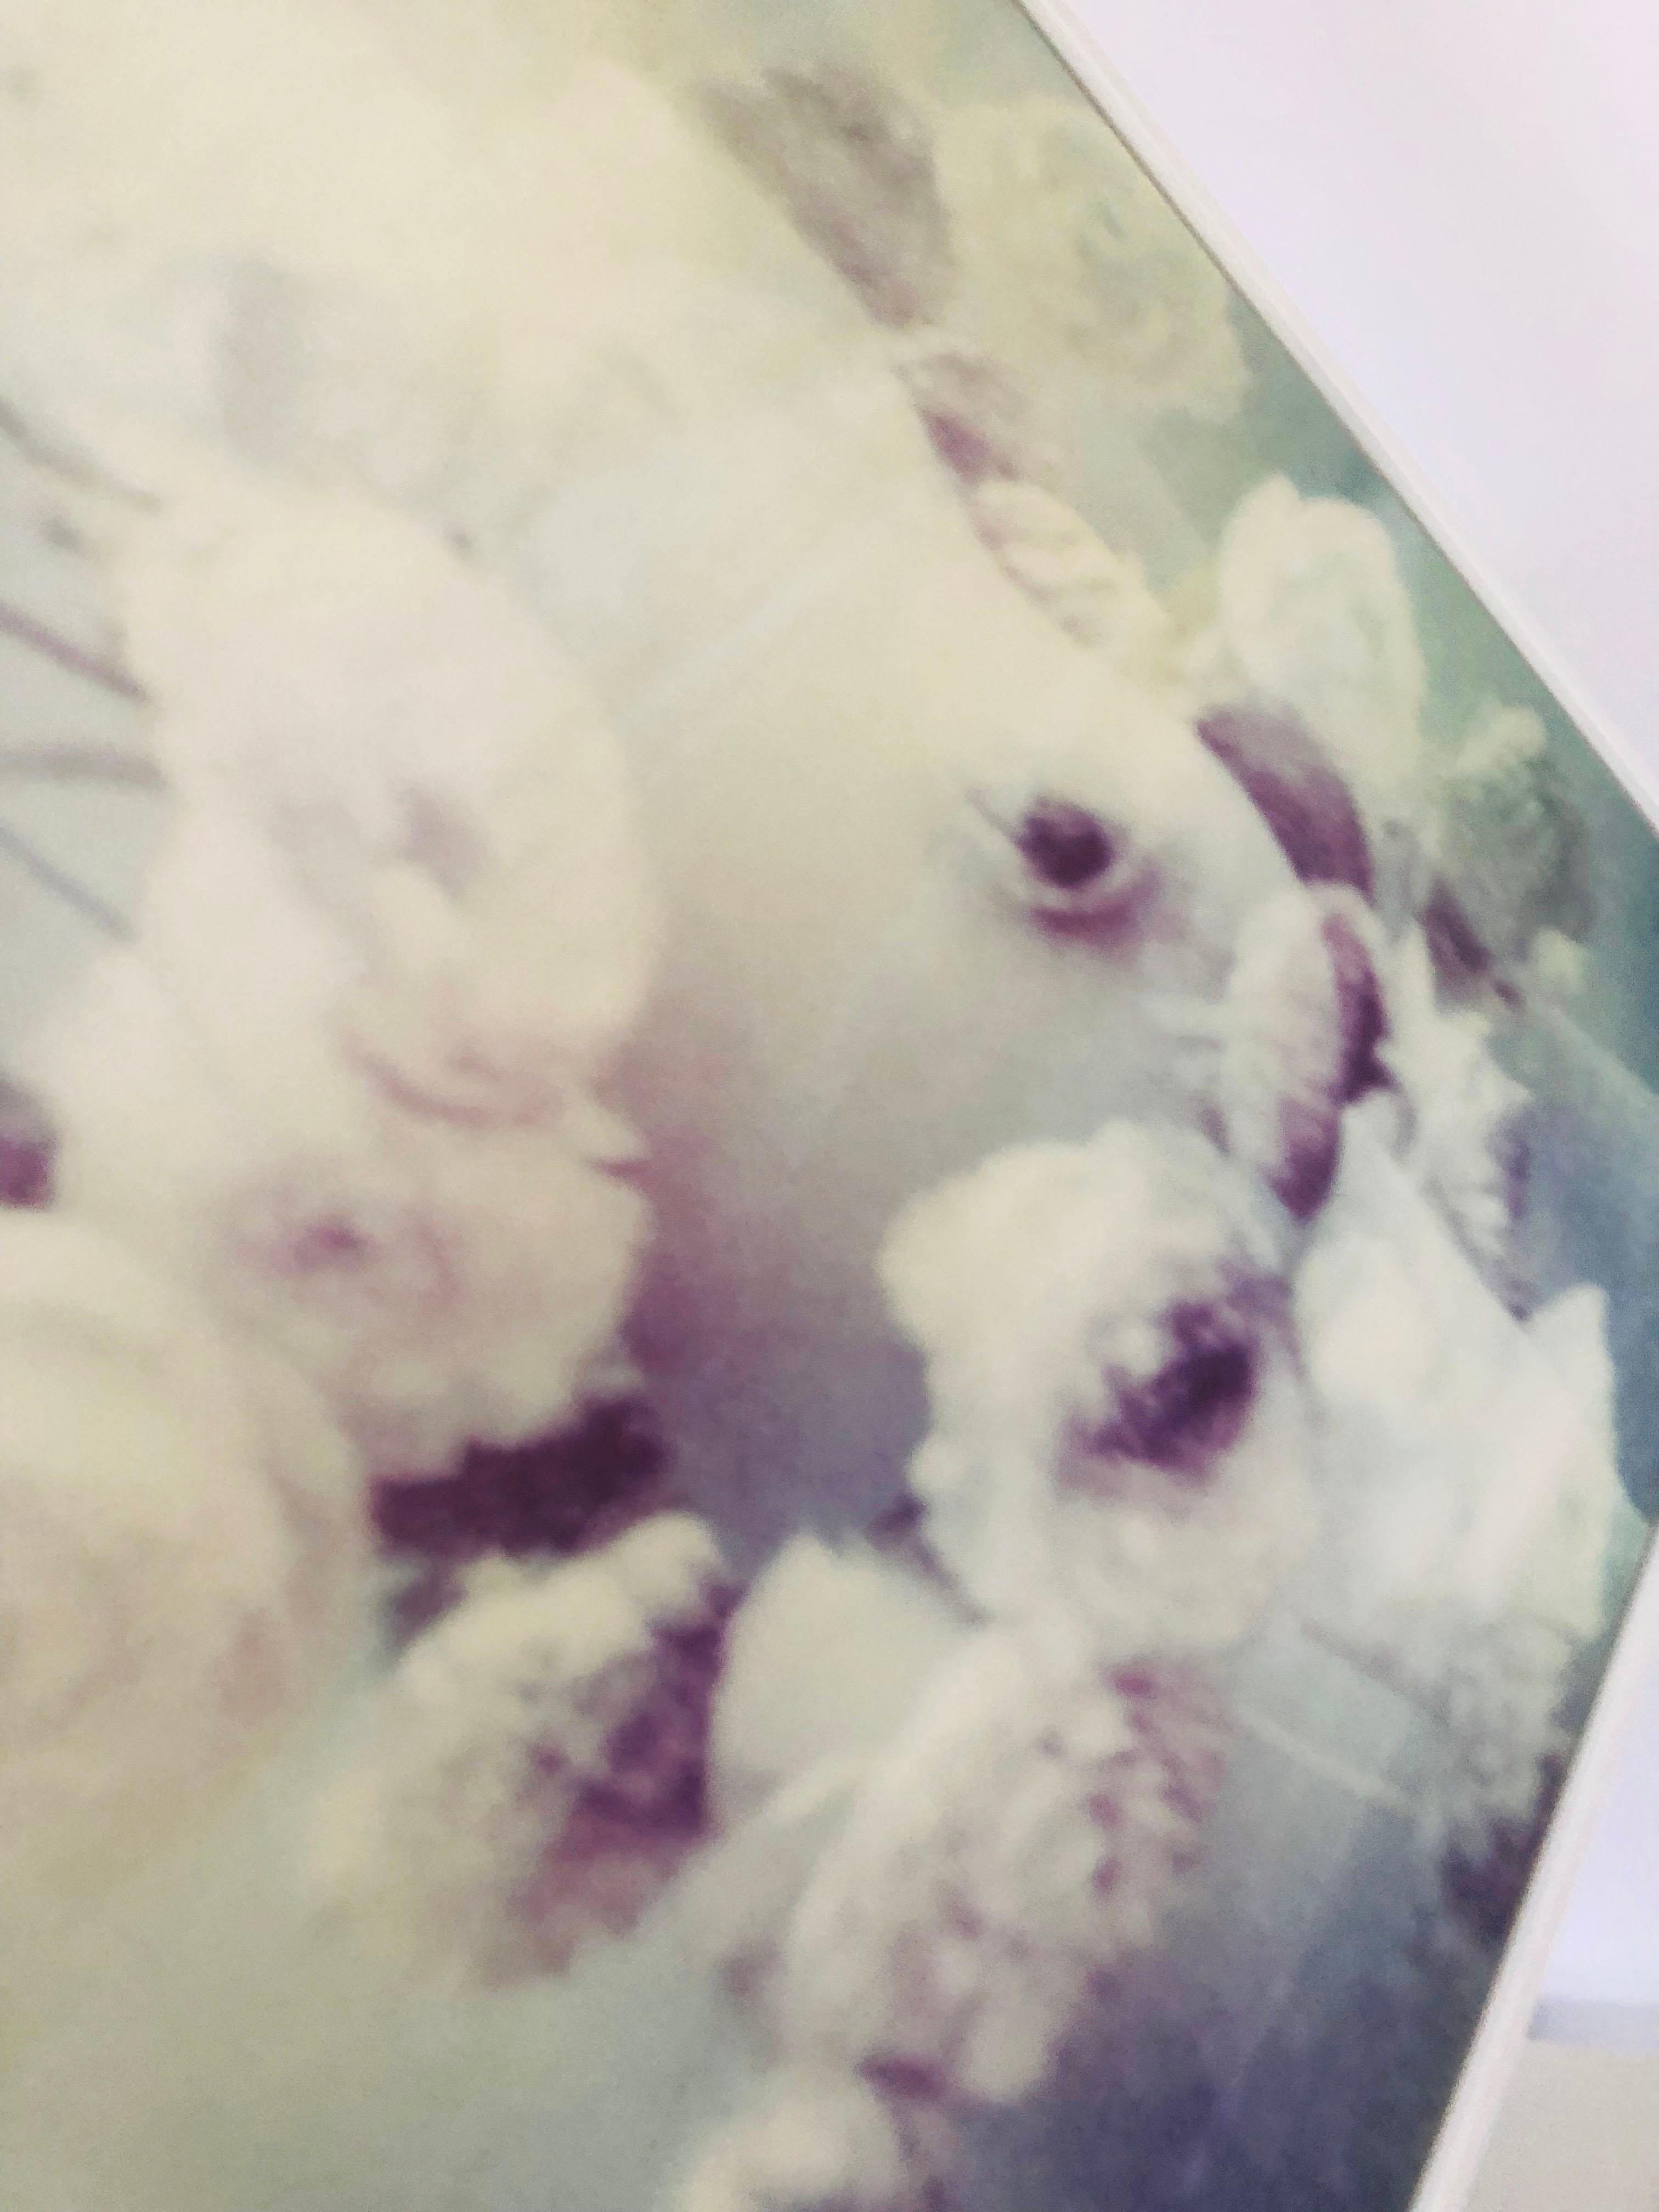 RANONKEL #Diptychon, 2009
[Aus der Serie Need to Be]
Veröffentlicht in ihrem Buch The Eyes of the Fox, 2018

30x40cm pro Stück, 70x40cm installiert.
Digitaler Archivierungspigmentdruck nach einem Polaroid
zur Museumsqualität 
PHOTO RAG ® ULTRA